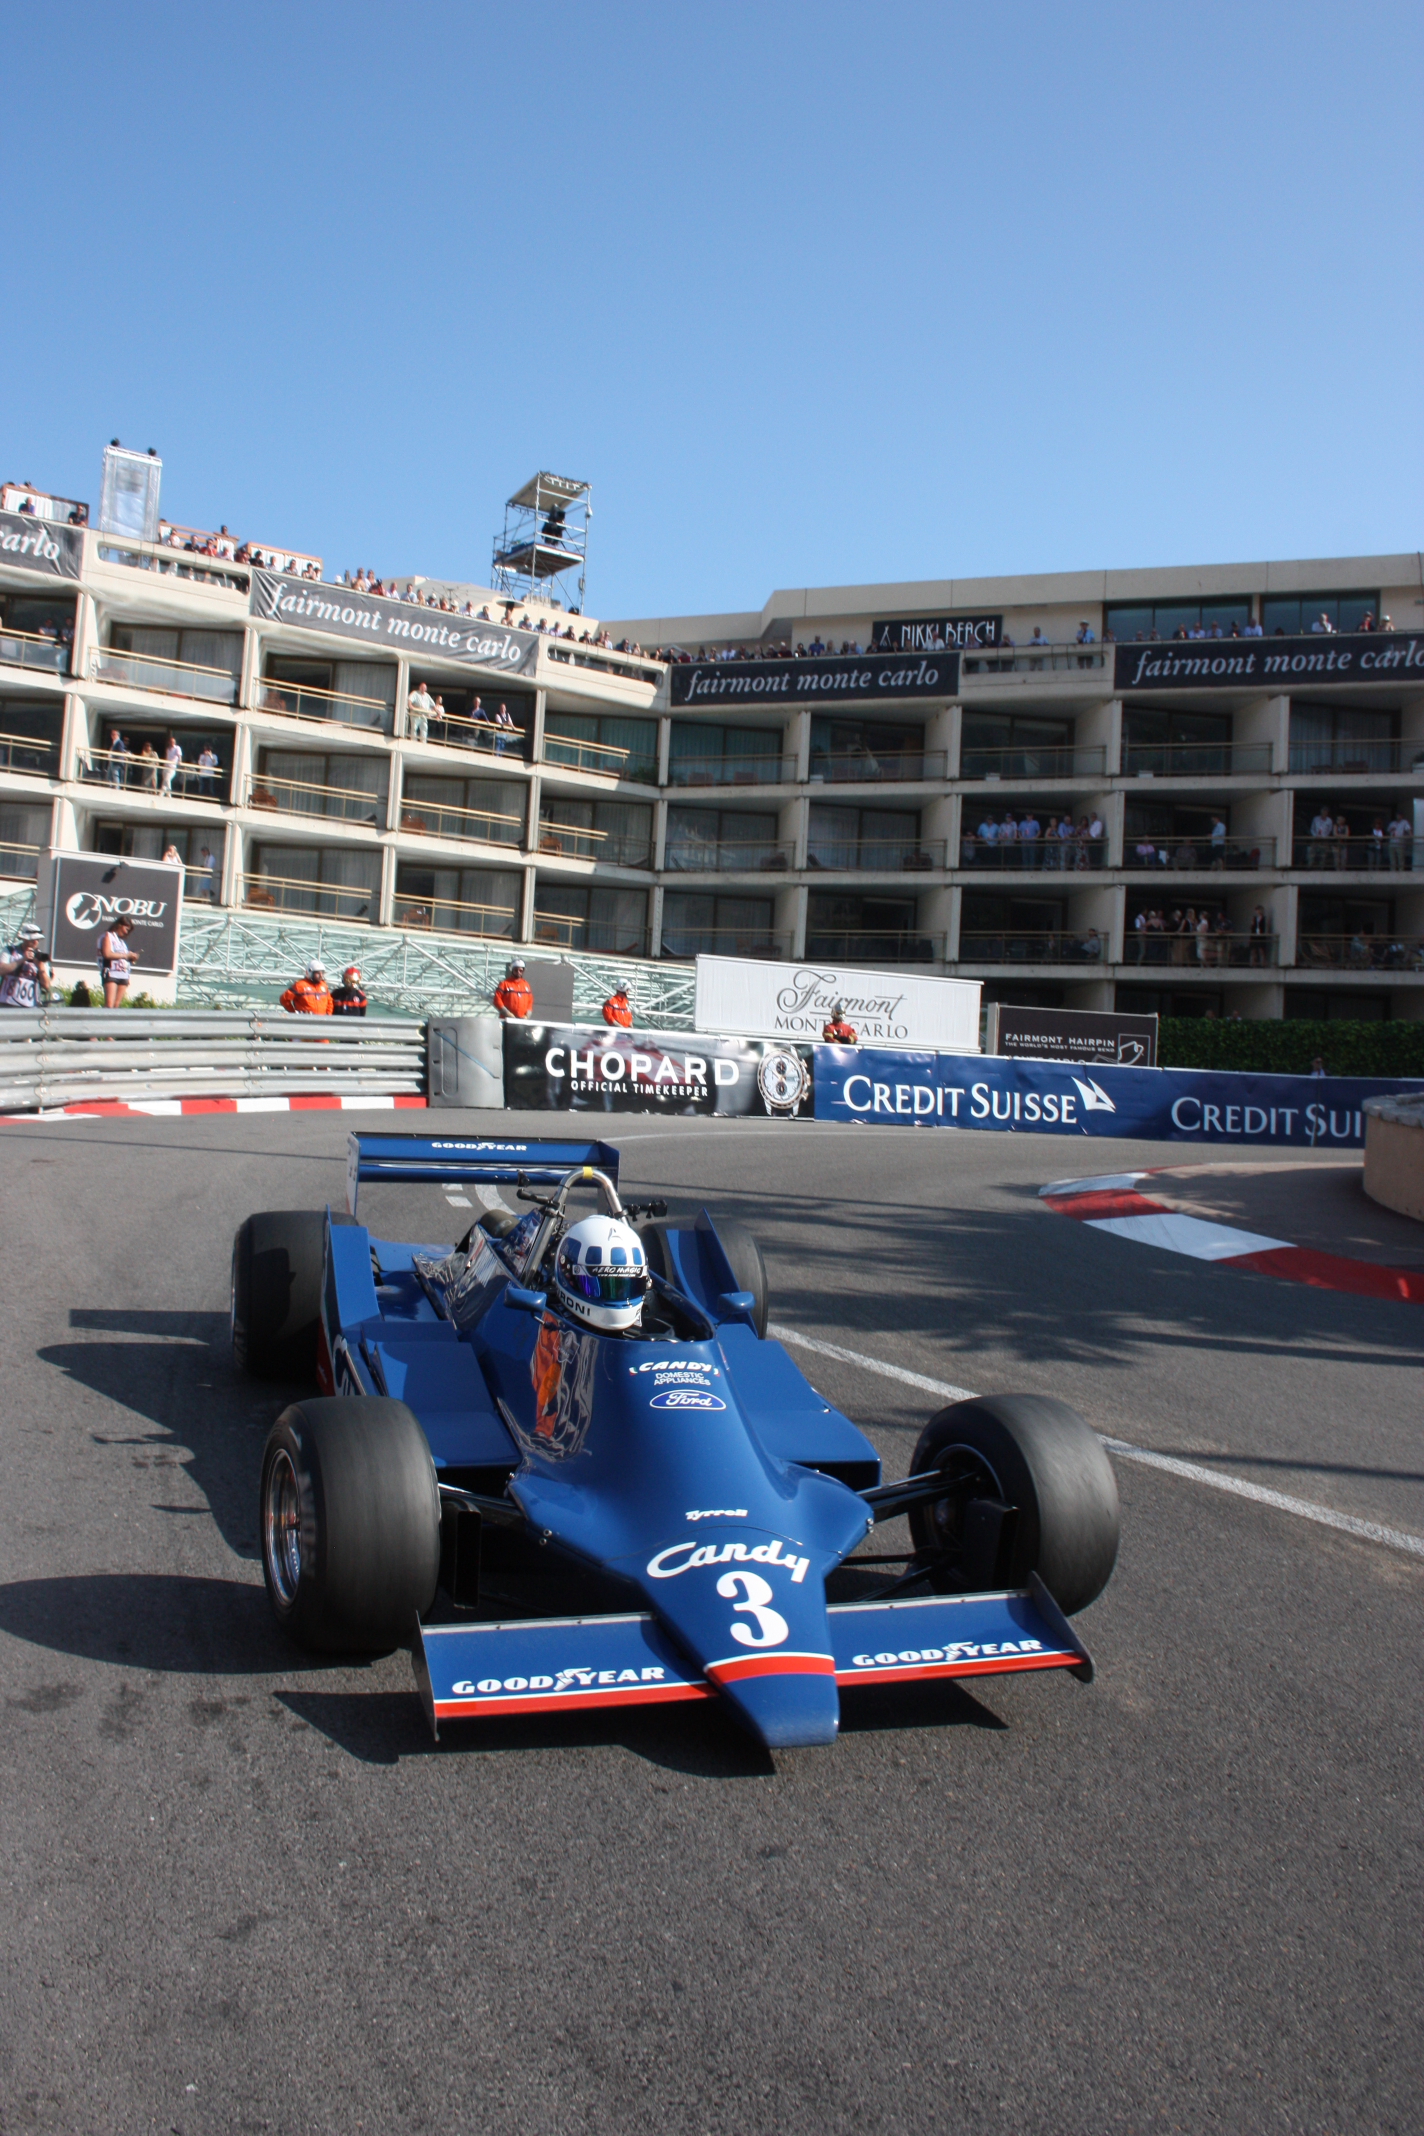 Ne, to není reinkarnace Didiera Pironiho z roku 1979: Fabrice Leheritier v Tyrrellu 009 před hotelem Loews (pardon: Fairmont)